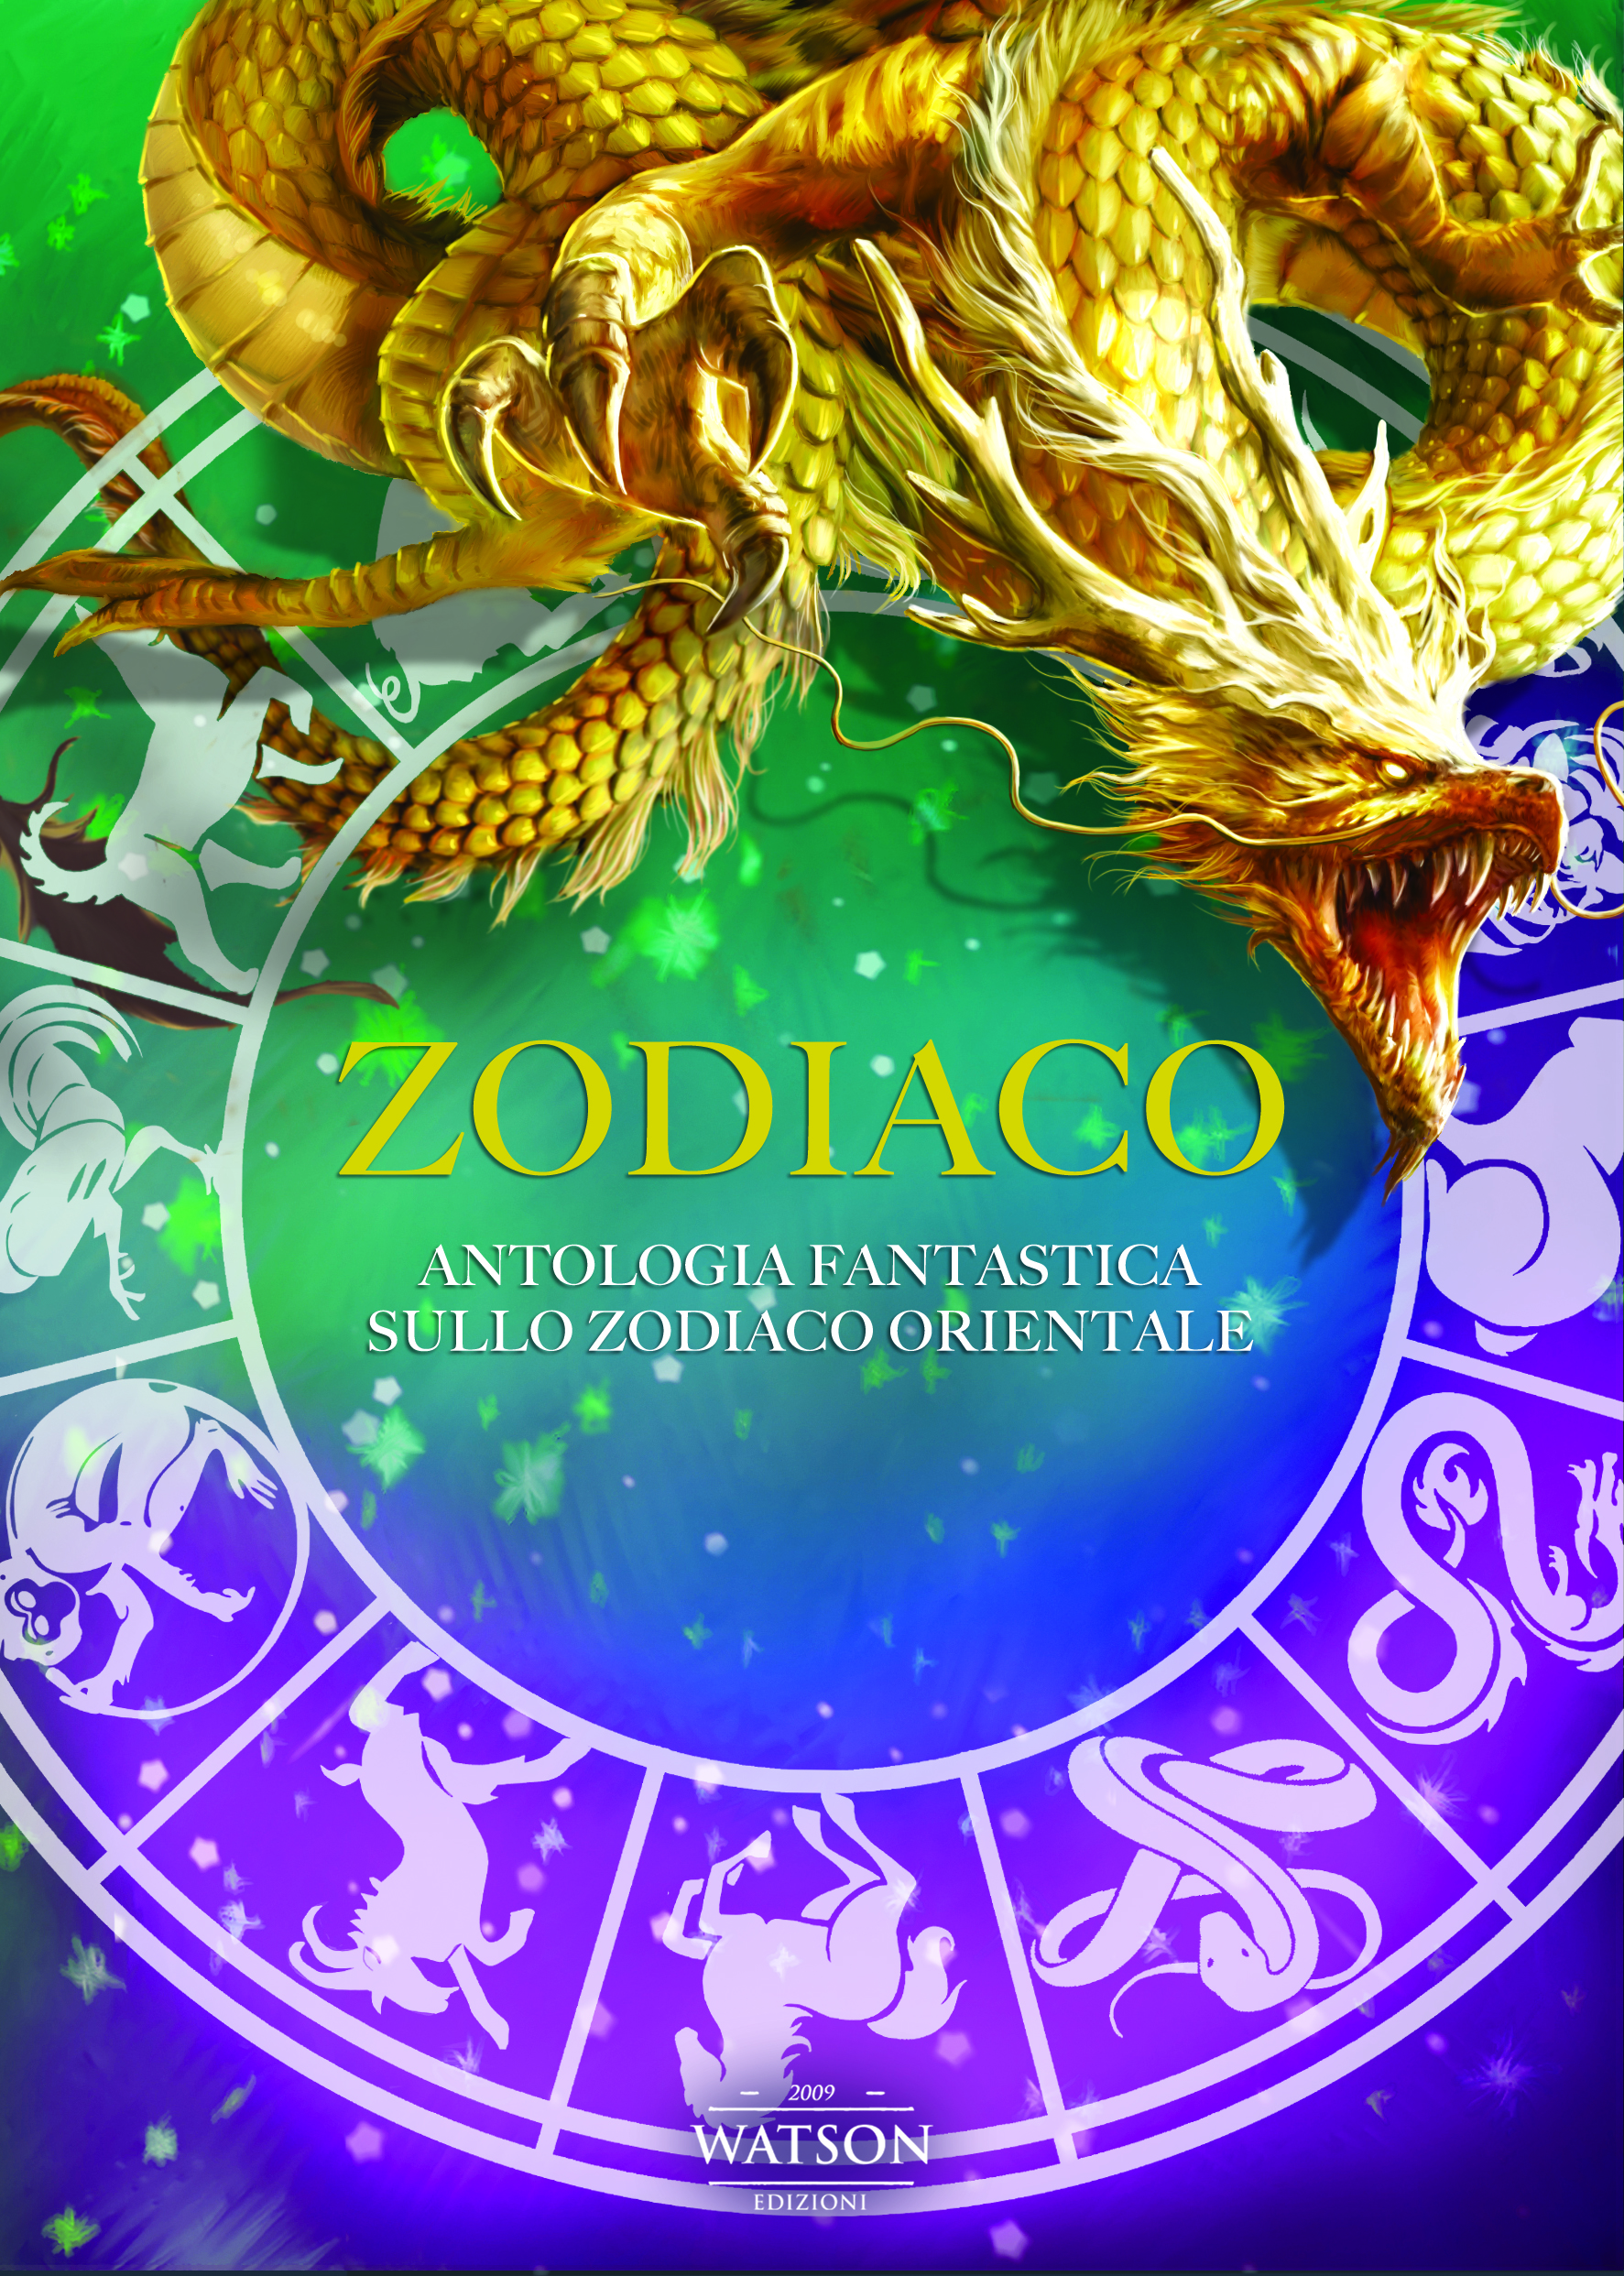 la copertina di zodiaco - nerdface